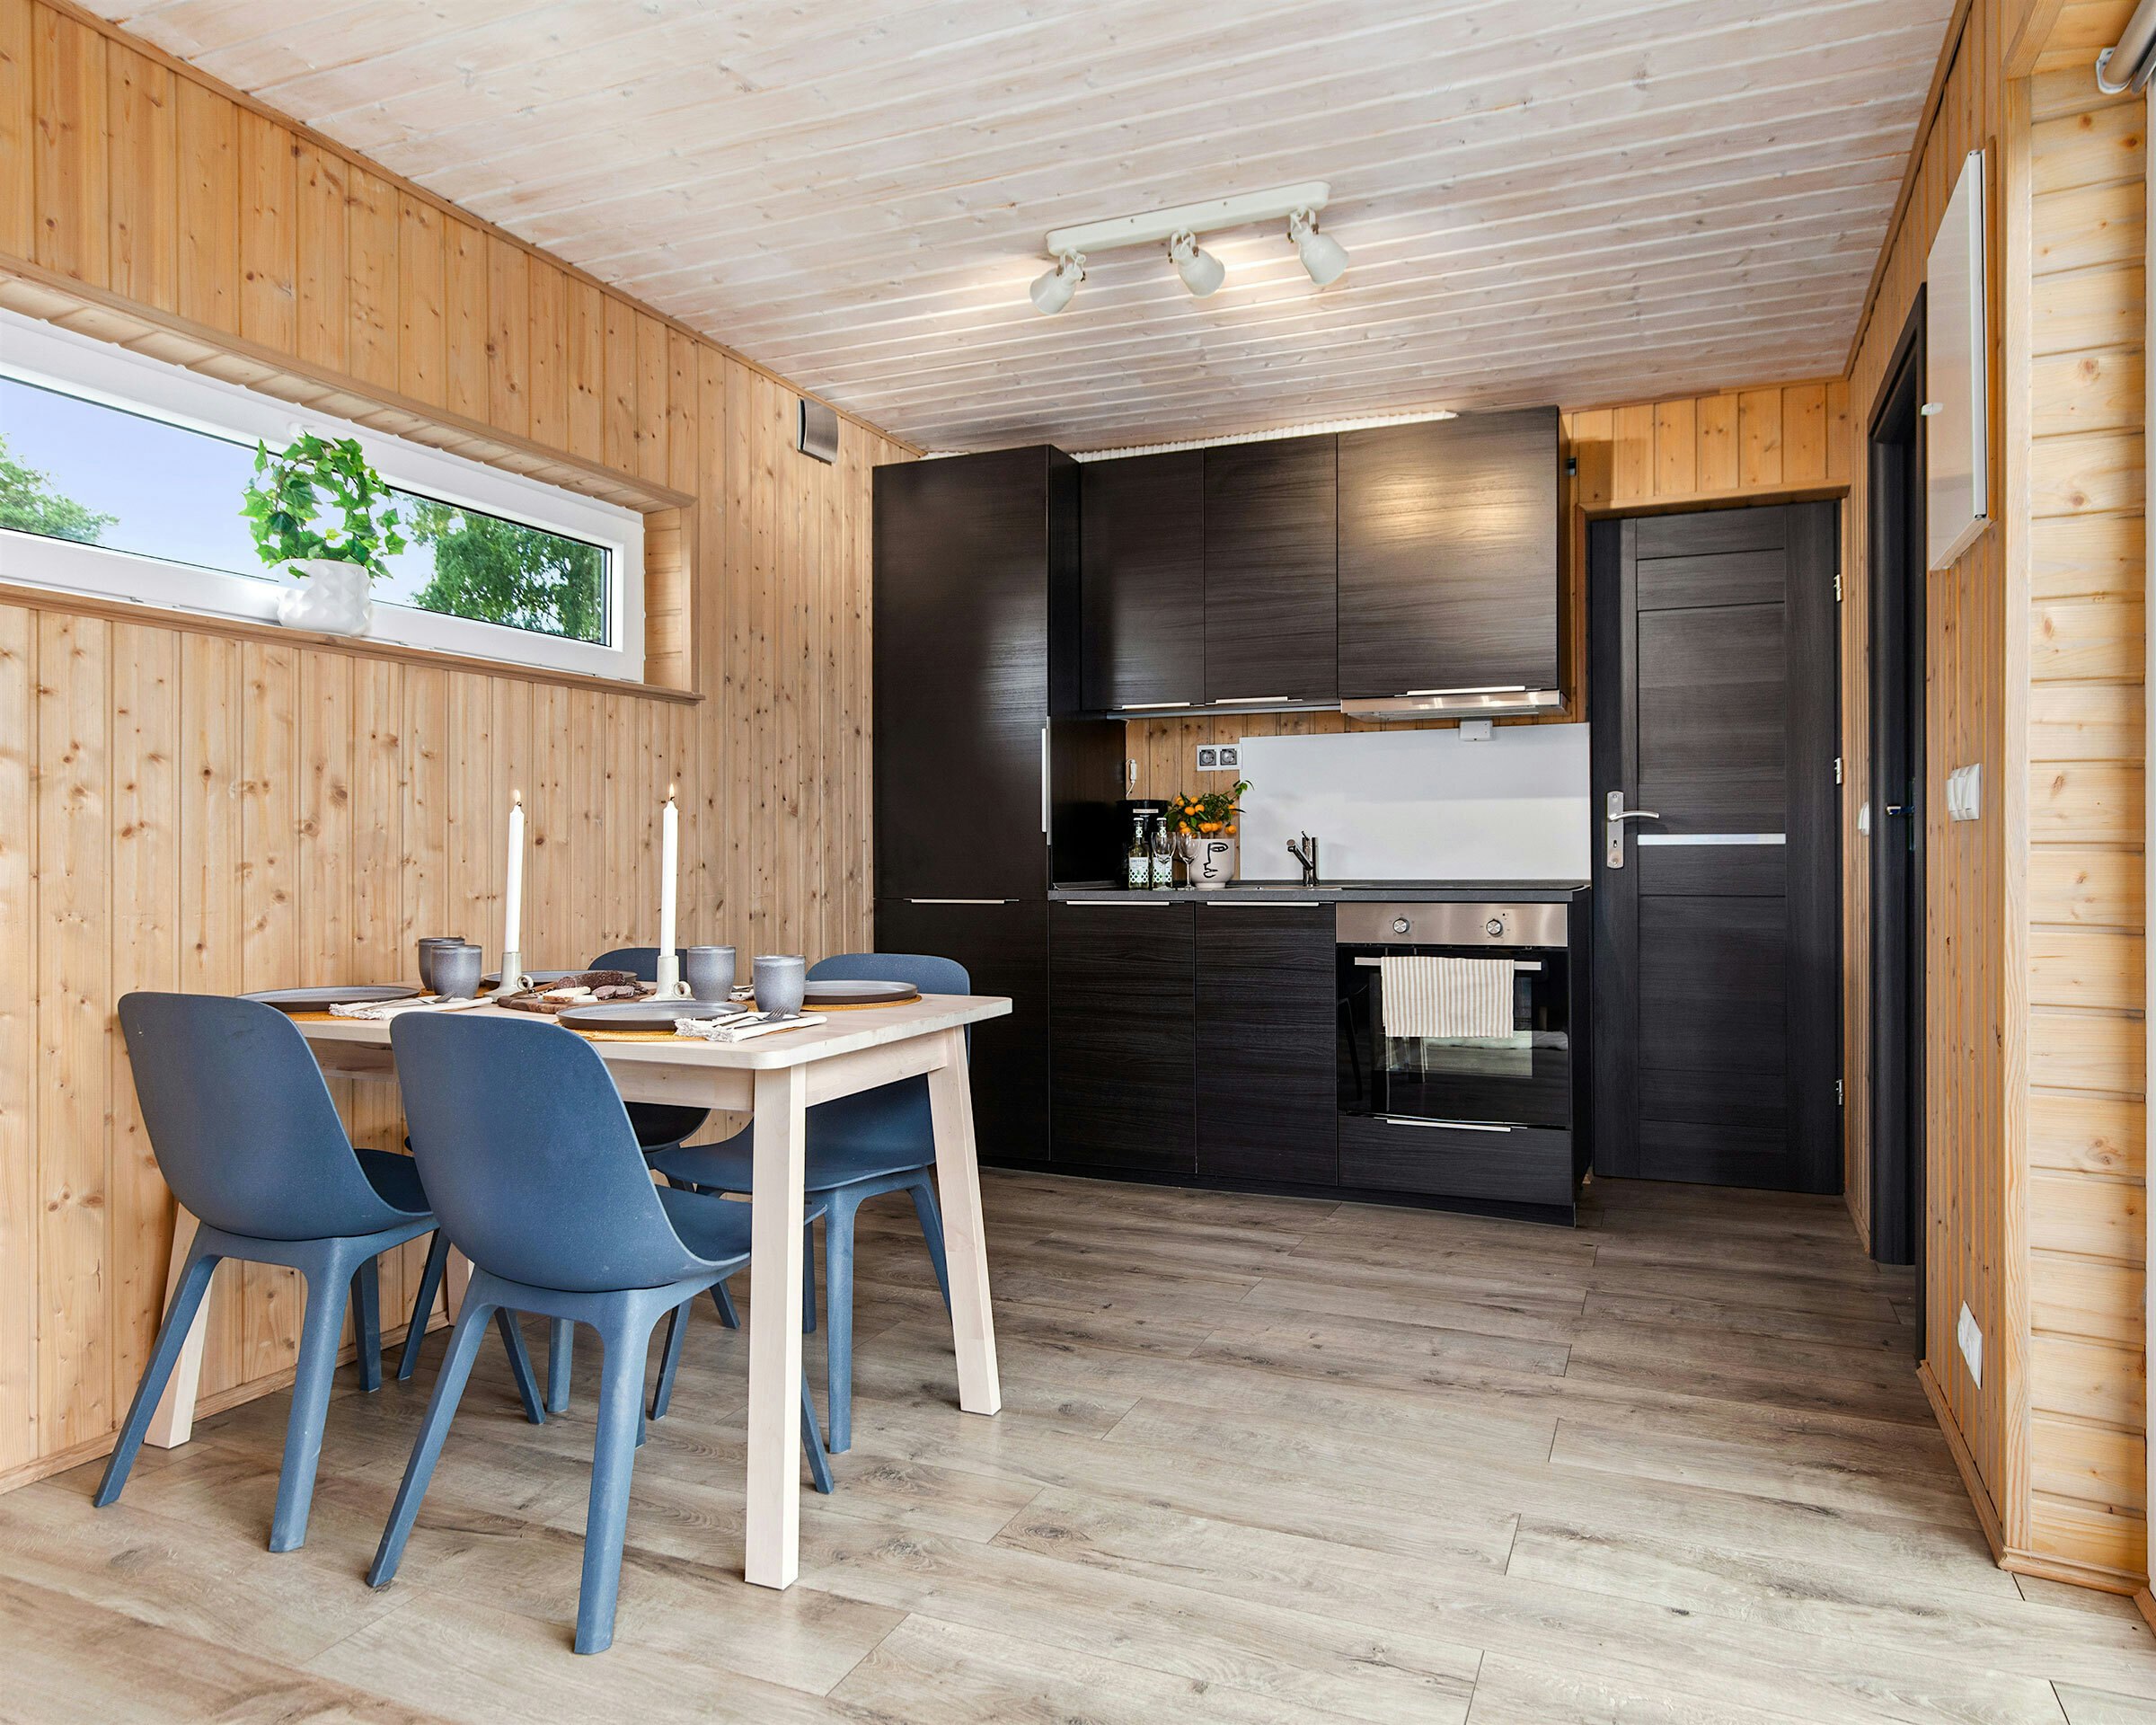 Moderne rom med dekket spisebord, kjøkken med kjøleskap og komfyr i bakgrunnen. Foto